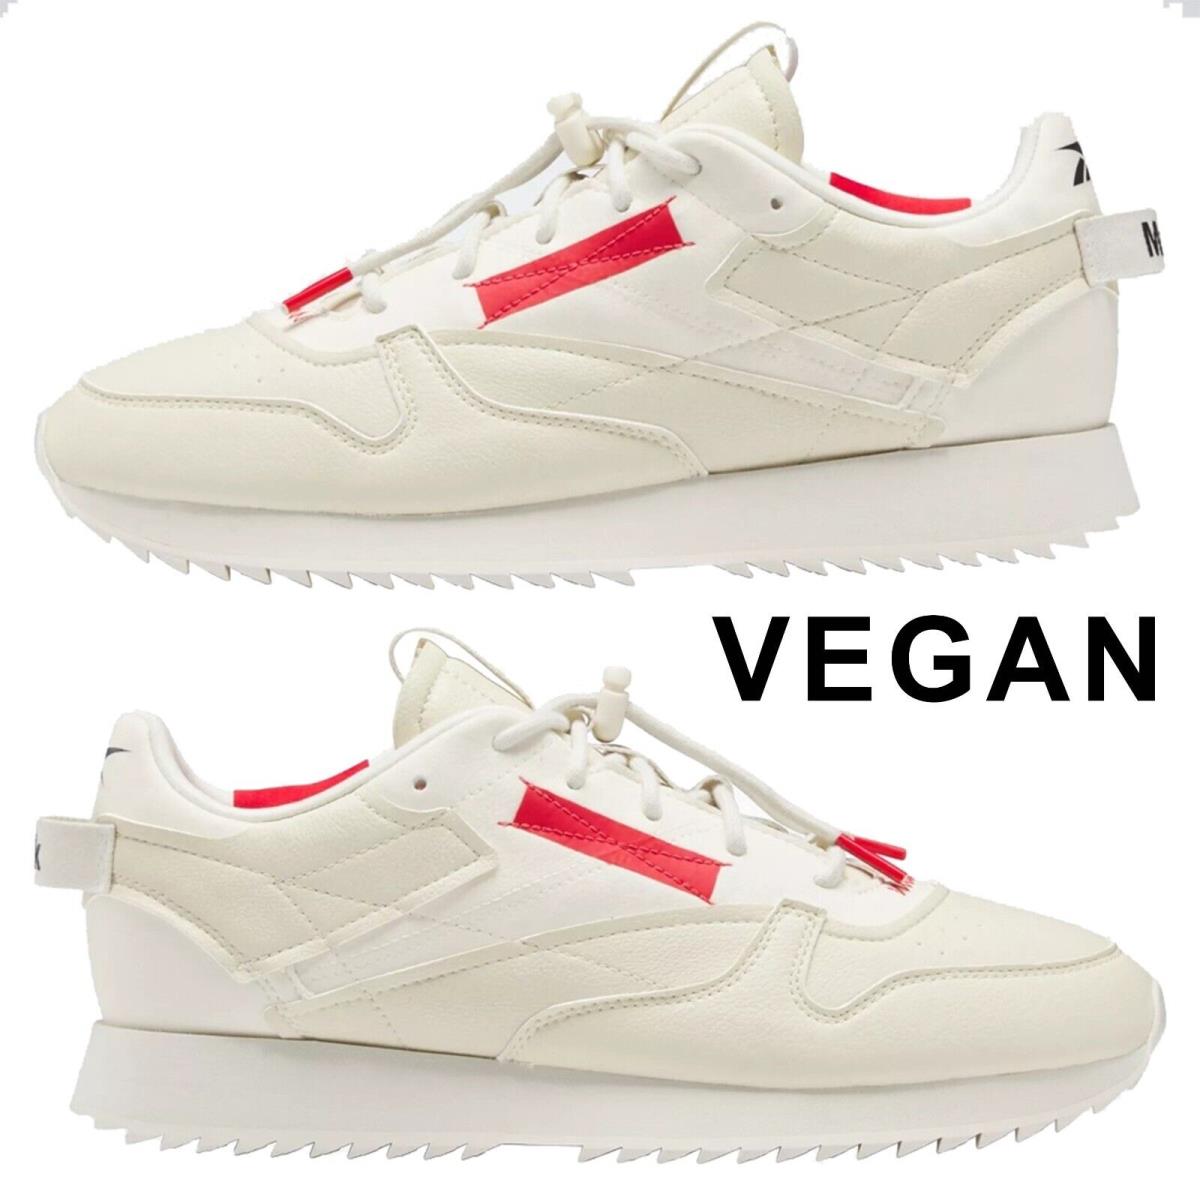 Reebok Women`s Milk Makeup Classic Vegan Miy Shoes Rubber Outsole Lightweight